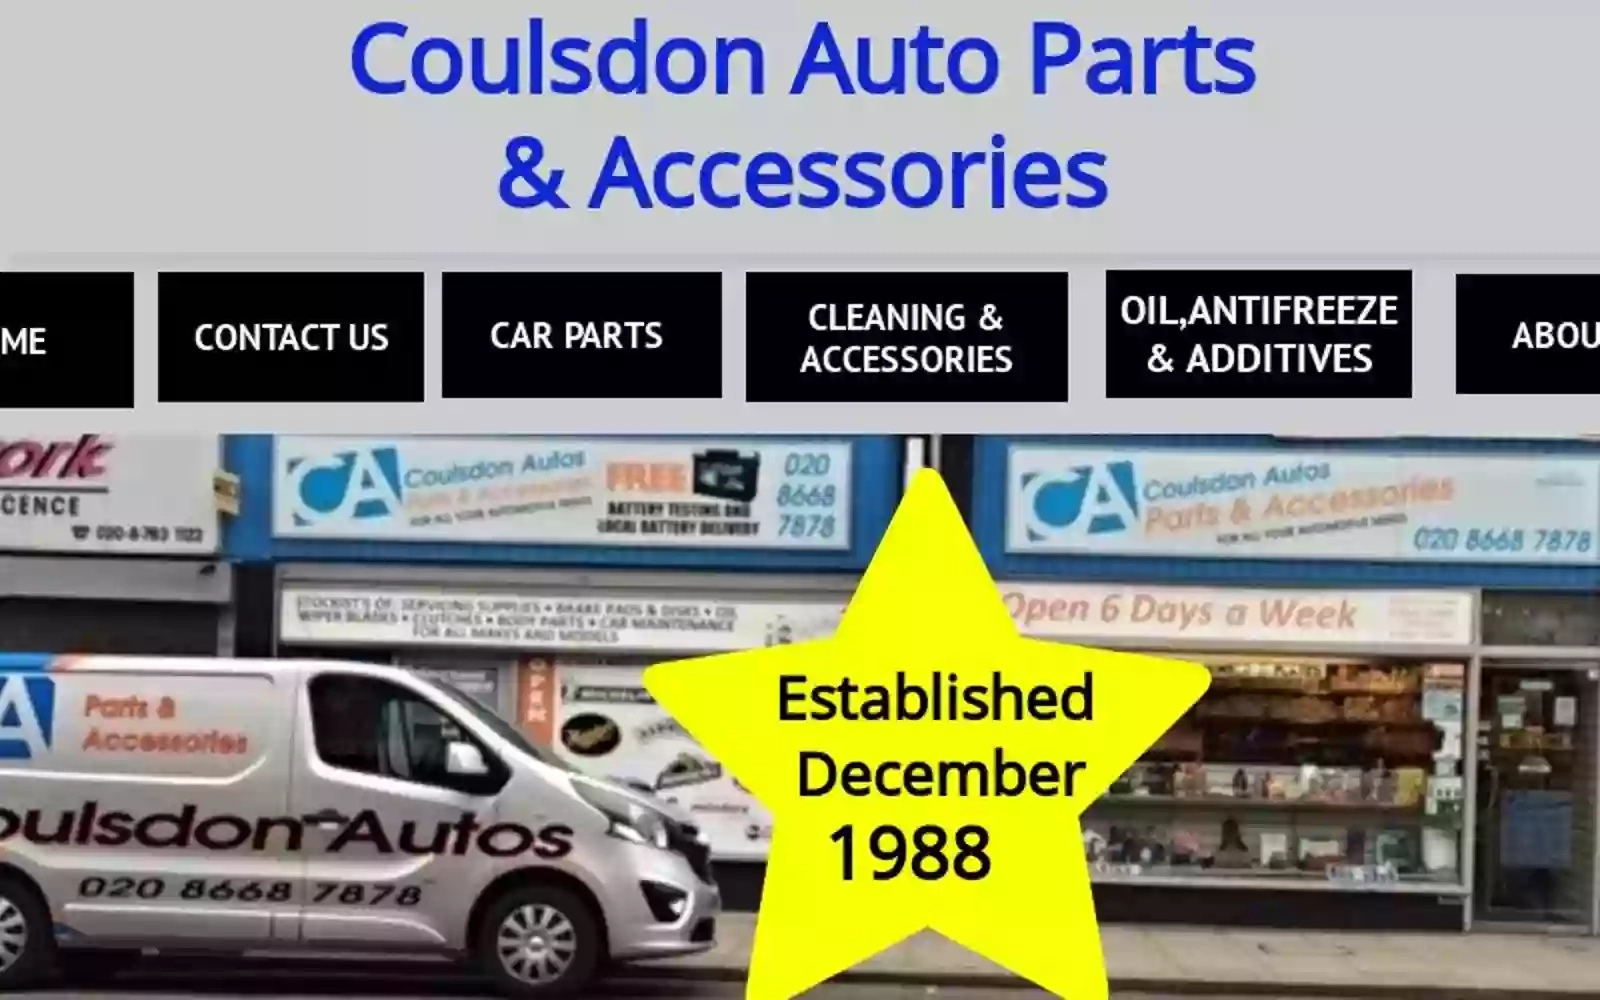 Coulsdon Auto Parts & Accessories